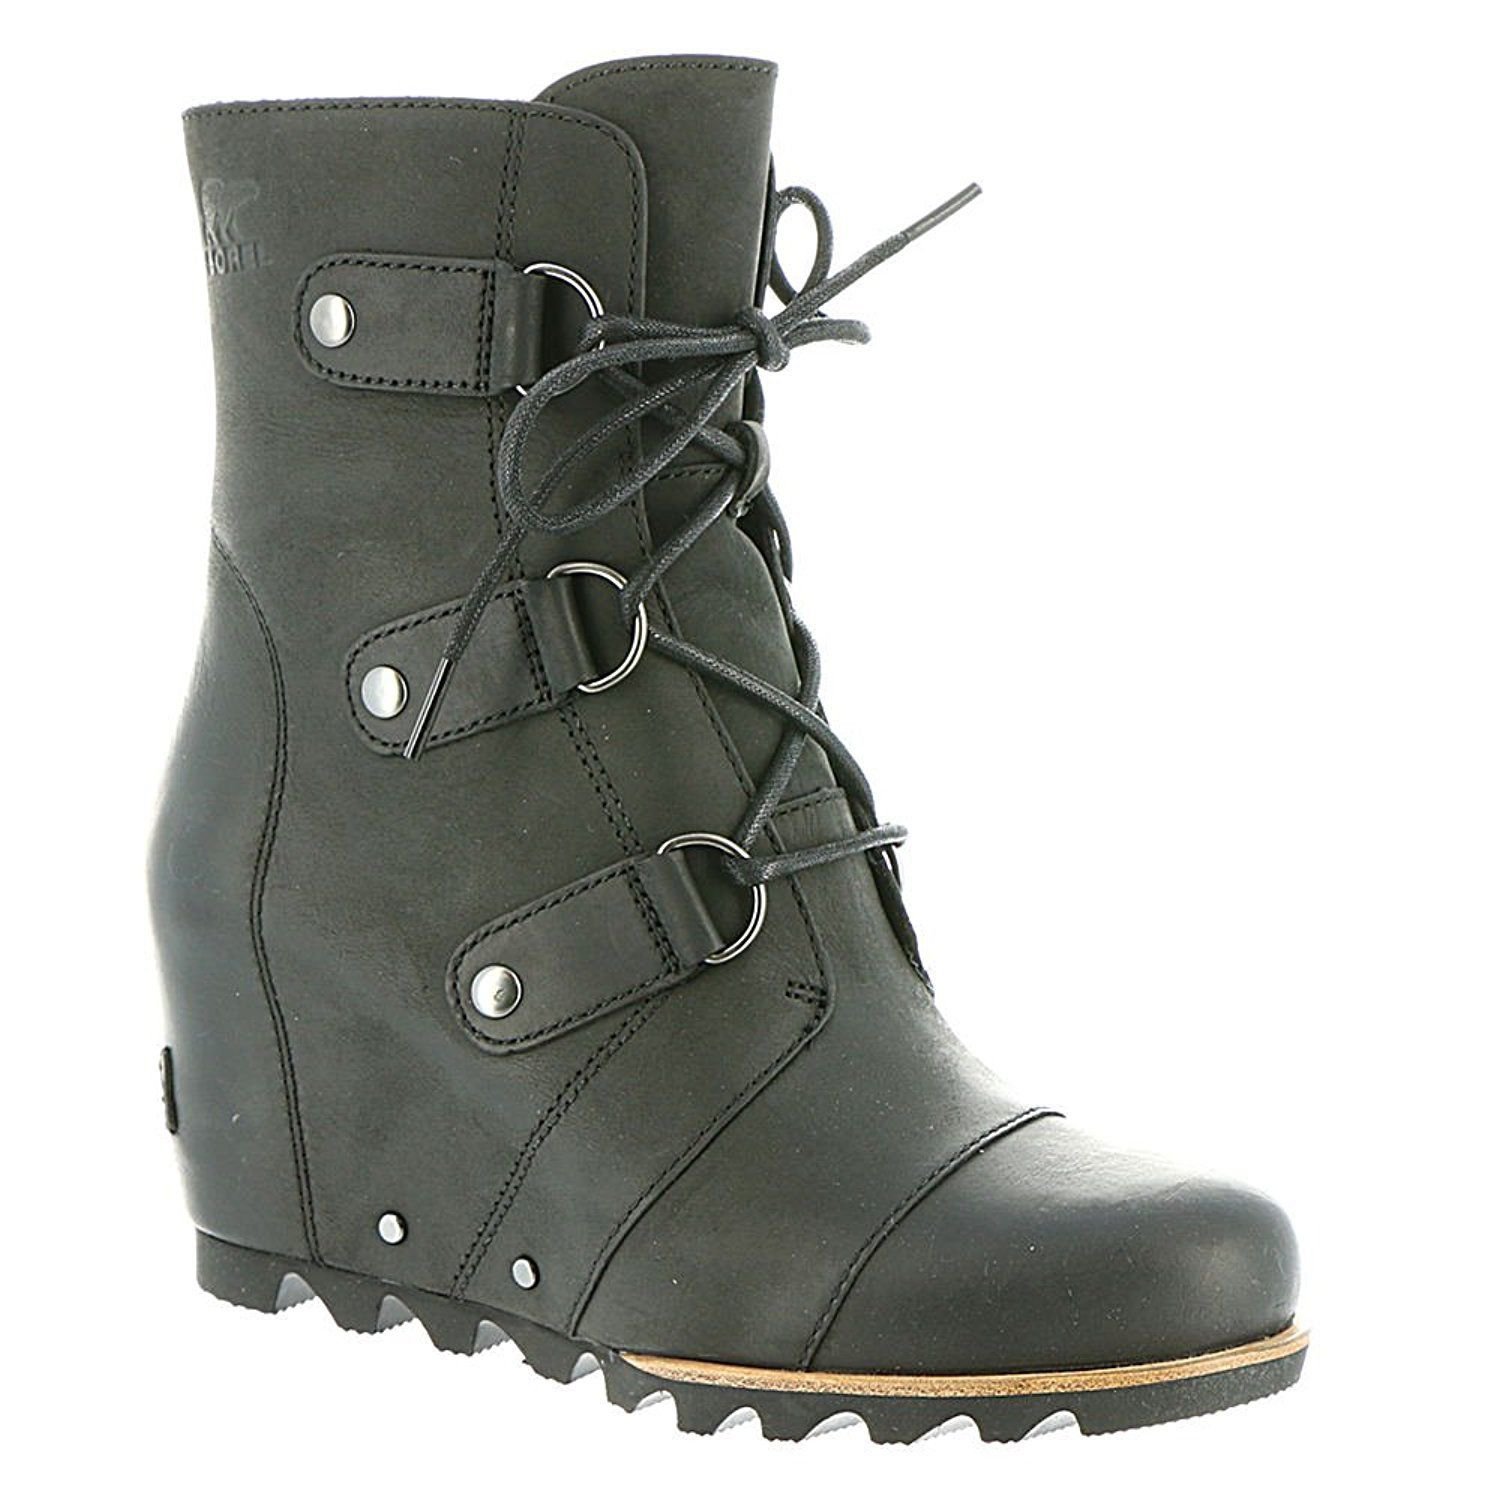 Sorel Women's Joan of Arctic Wedge Booties Boots Black Quarry sz size ...